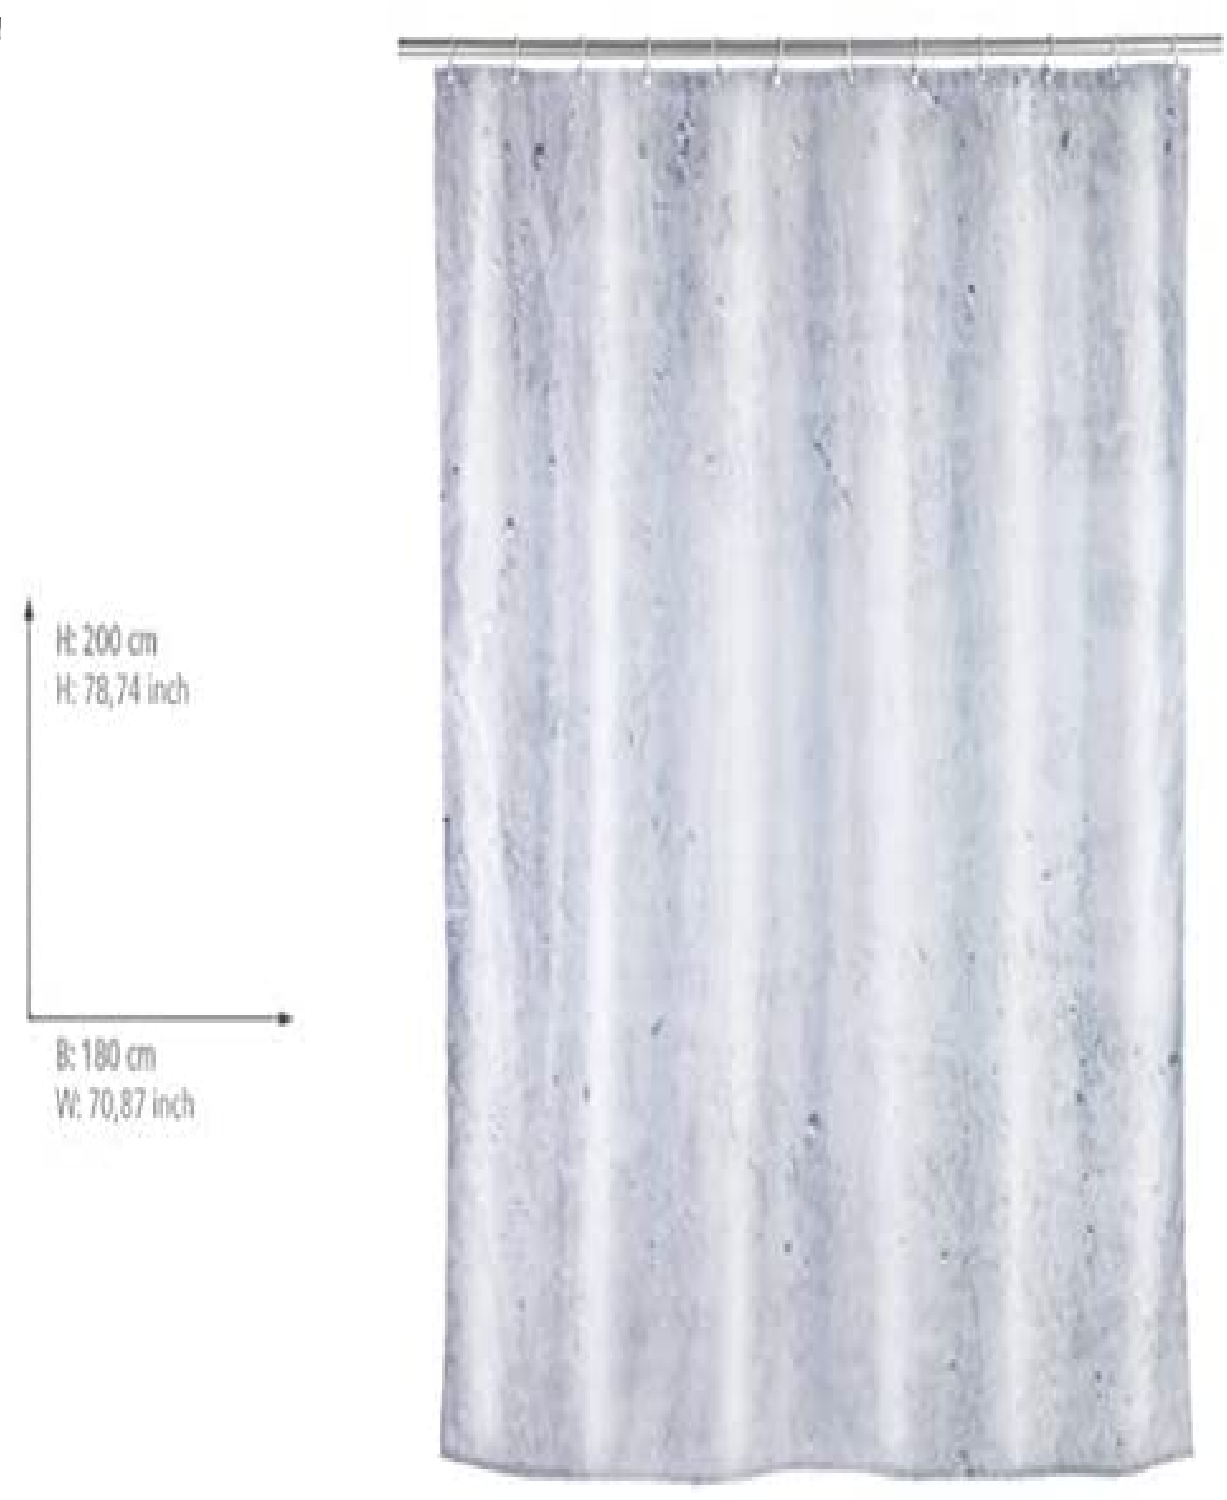 Duschvorhang Concrete - Textil , waschbar, wasserabweisend, mit 12 Duschvorhangringen, Polyester, 180 x 200 cm, Mehrfarbig